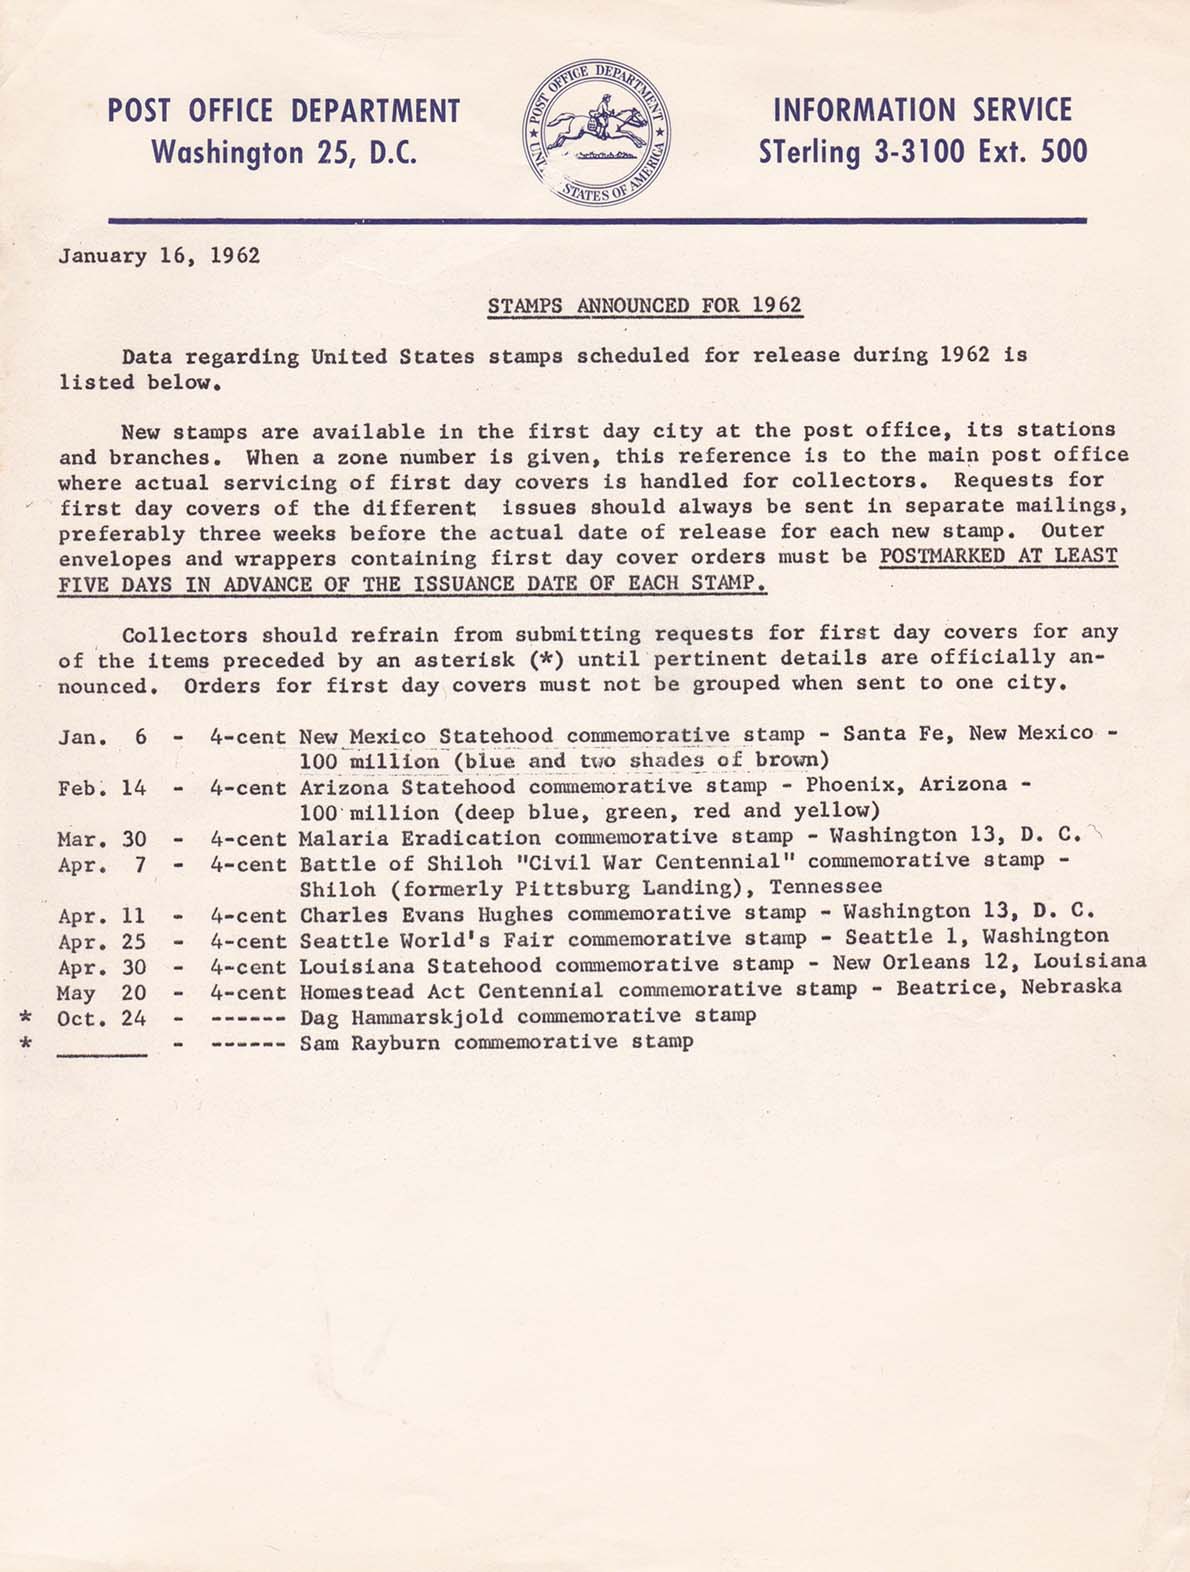 POD Information Service - January 16, 1962